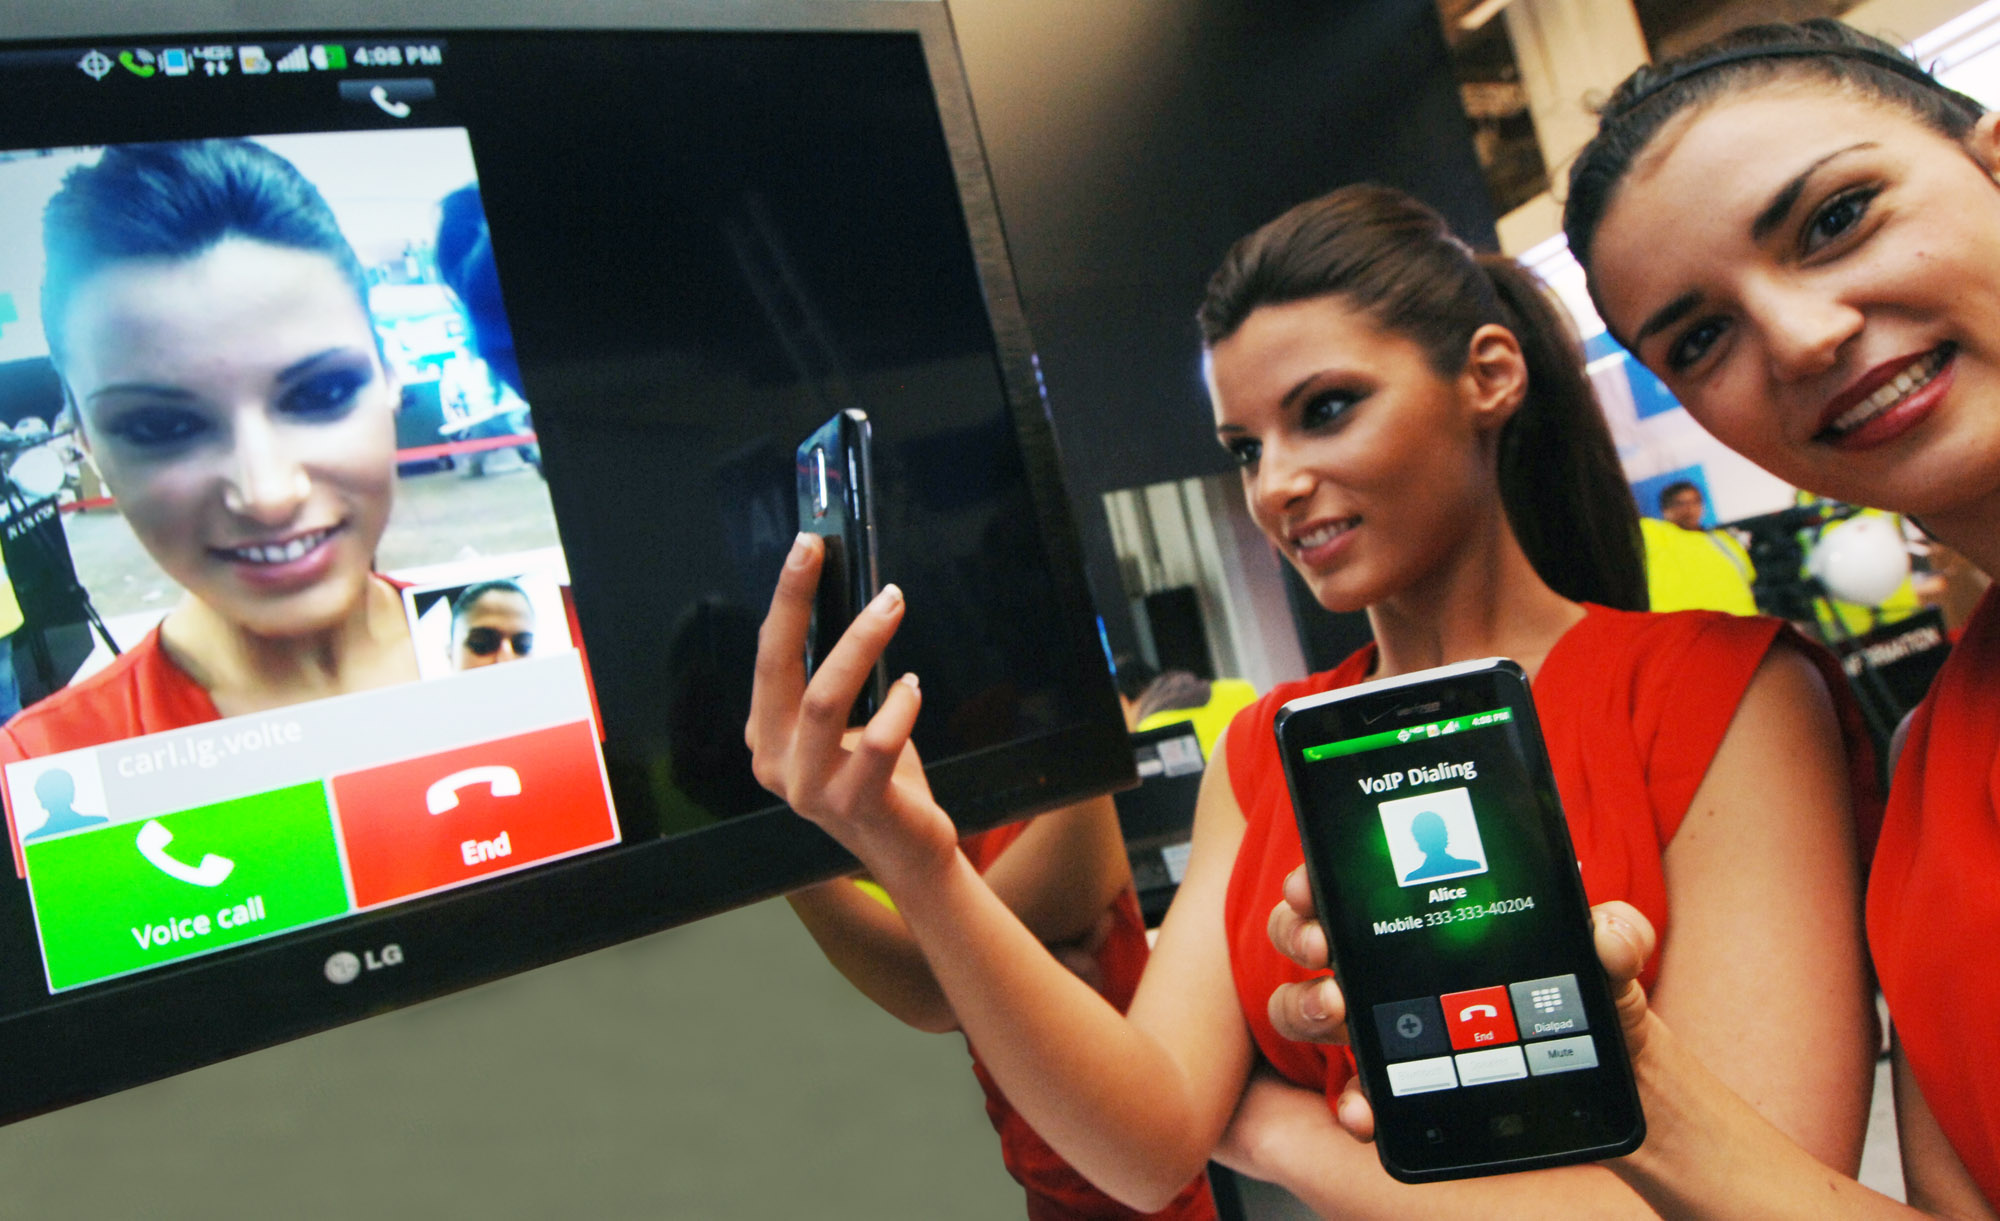 LG продемонстрировала на MWC-2012 первый в мире сеанс связи в сети LTE с возможностью переключения между голосовым вызовом и видеозвонком без прерывания разговор